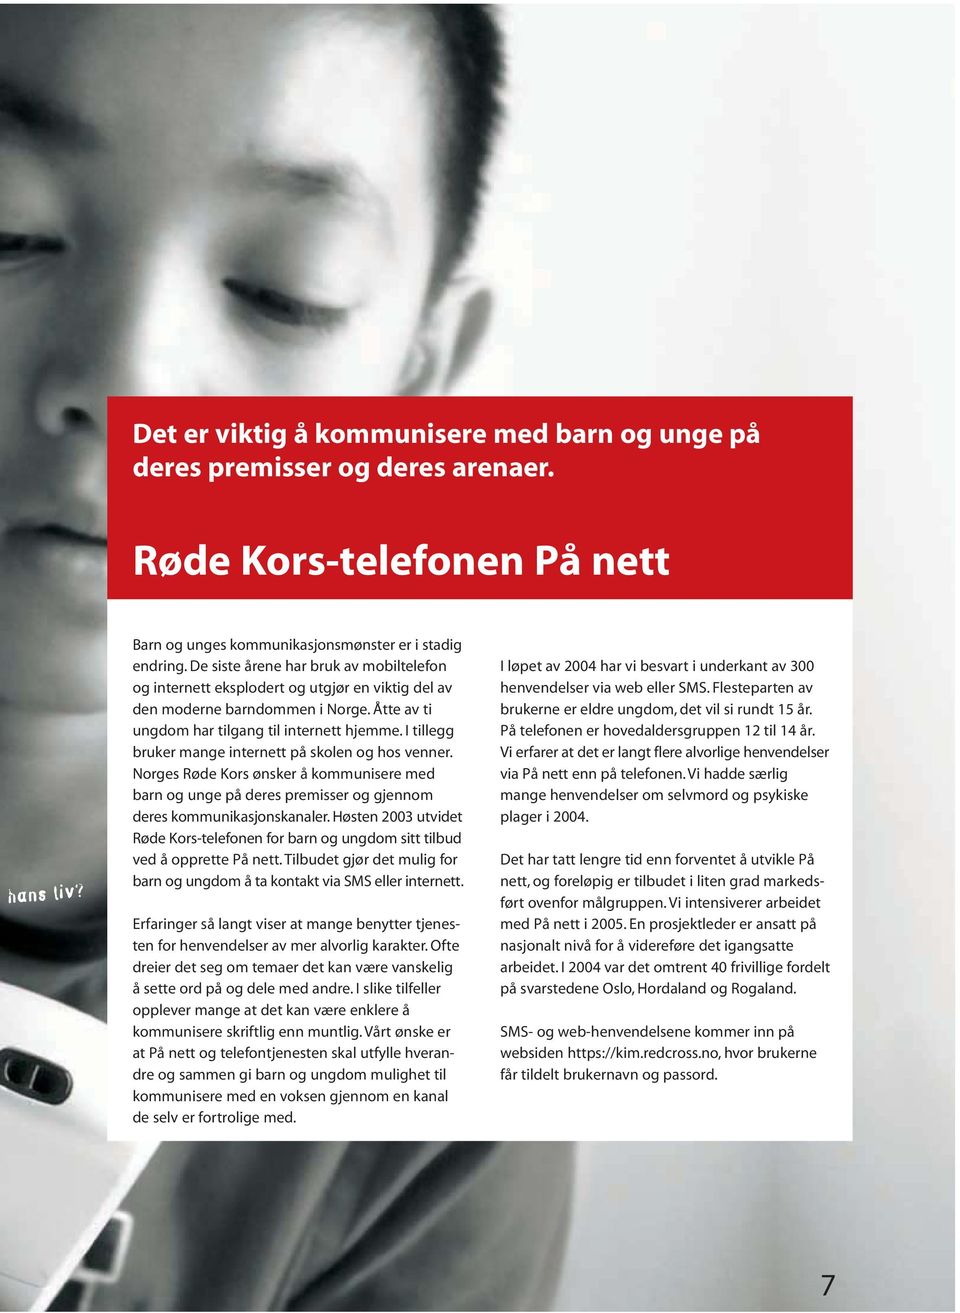 I tillegg bruker mange internett på skolen og hos venner. Norges Røde Kors ønsker å kommunisere med barn og unge på deres premisser og gjennom deres kommunikasjonskanaler.